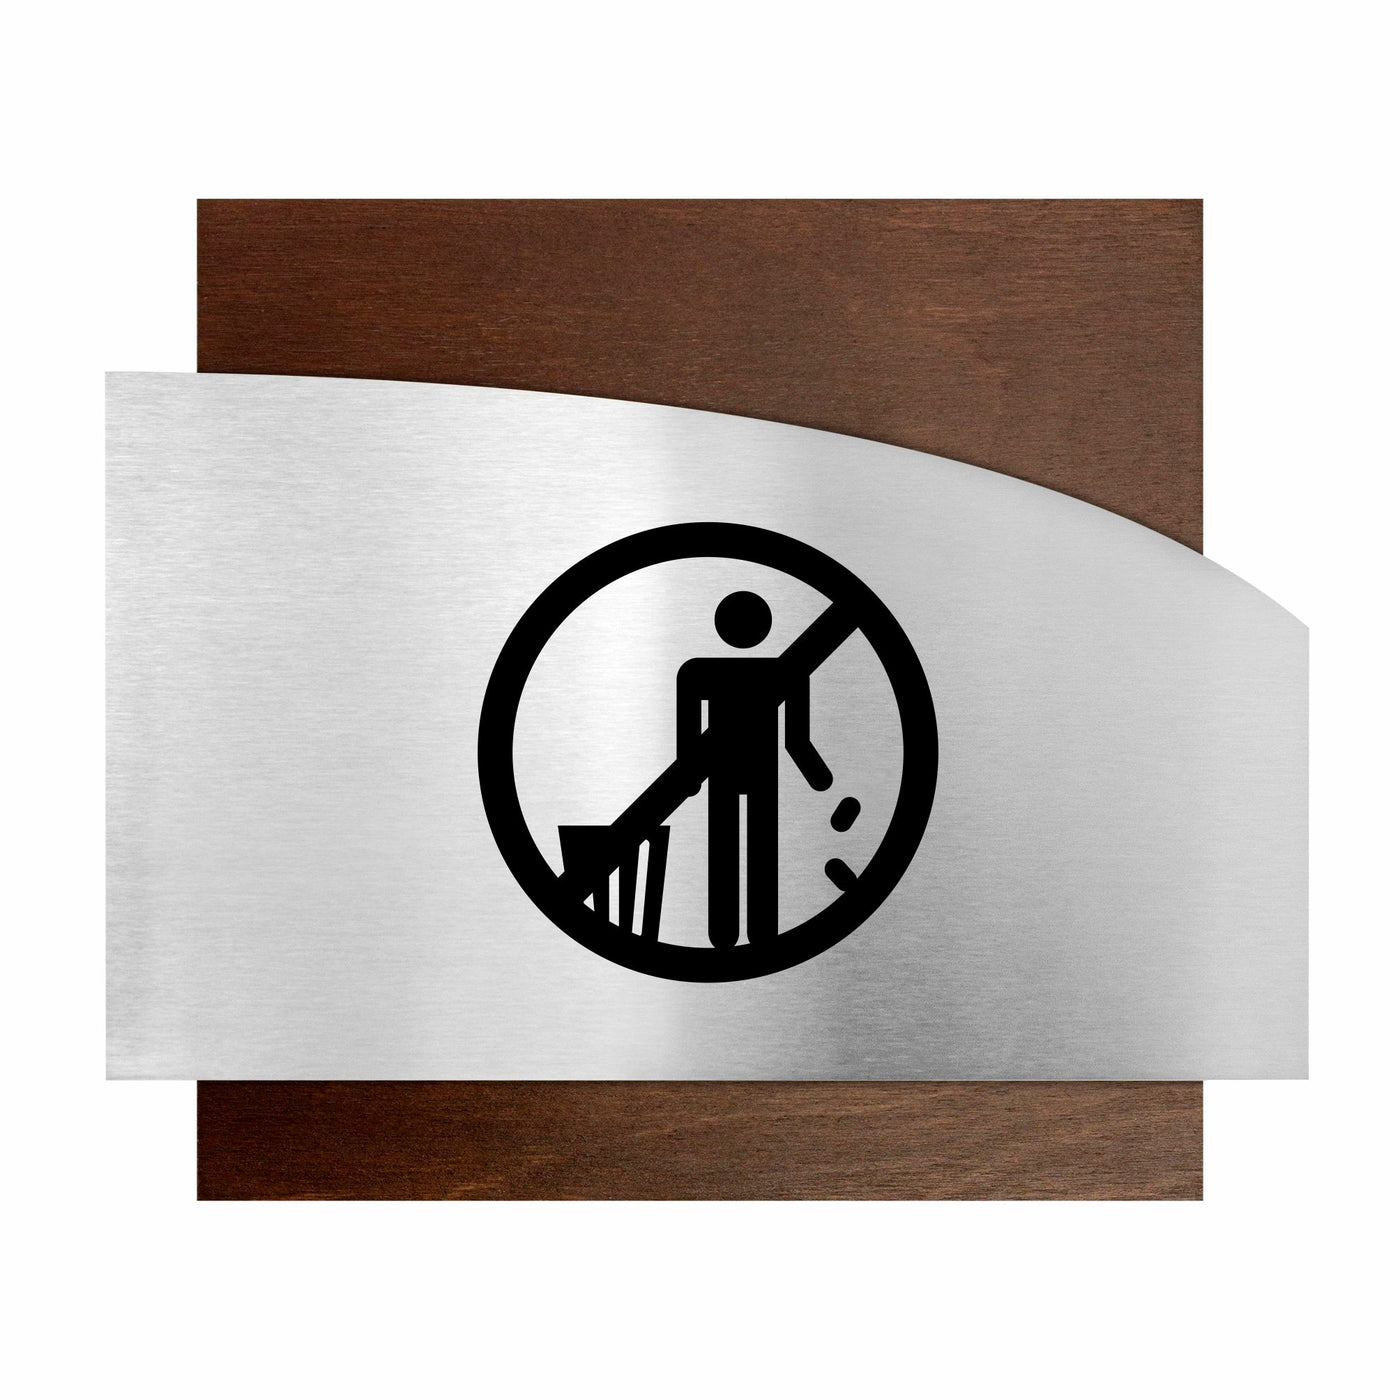 Wooden Don't Litter Sign - "Wave" Design